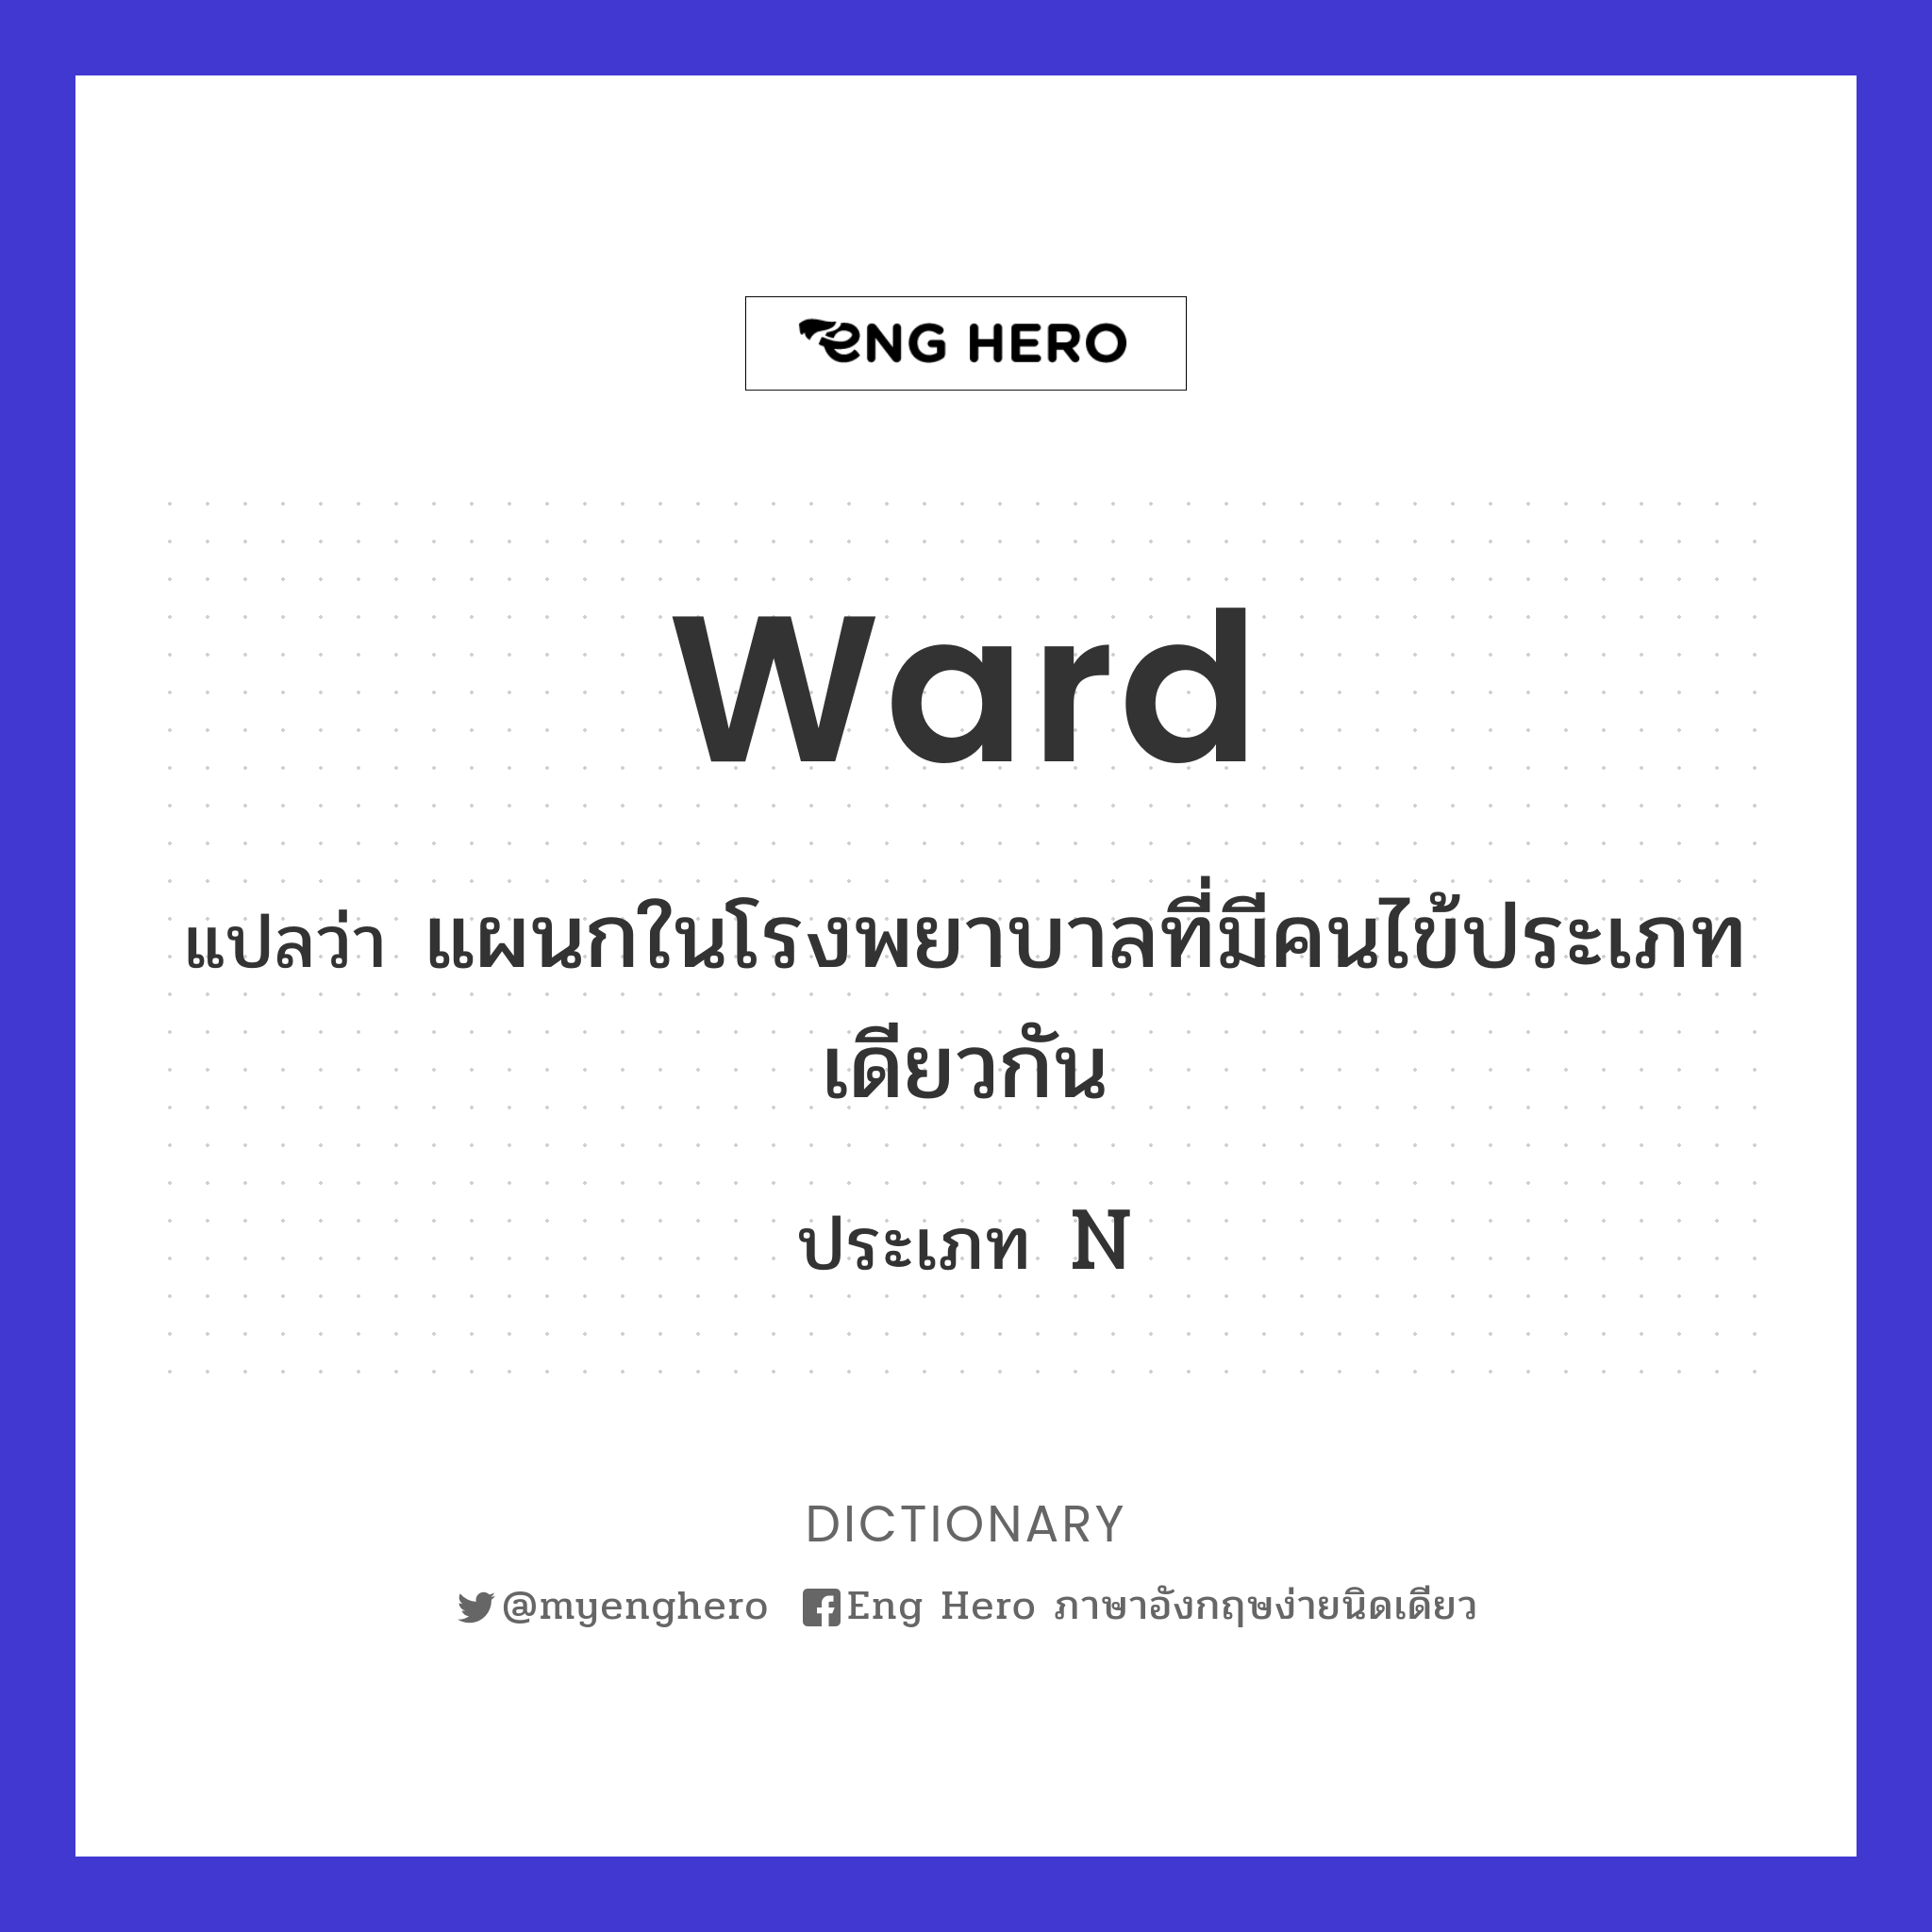 ward